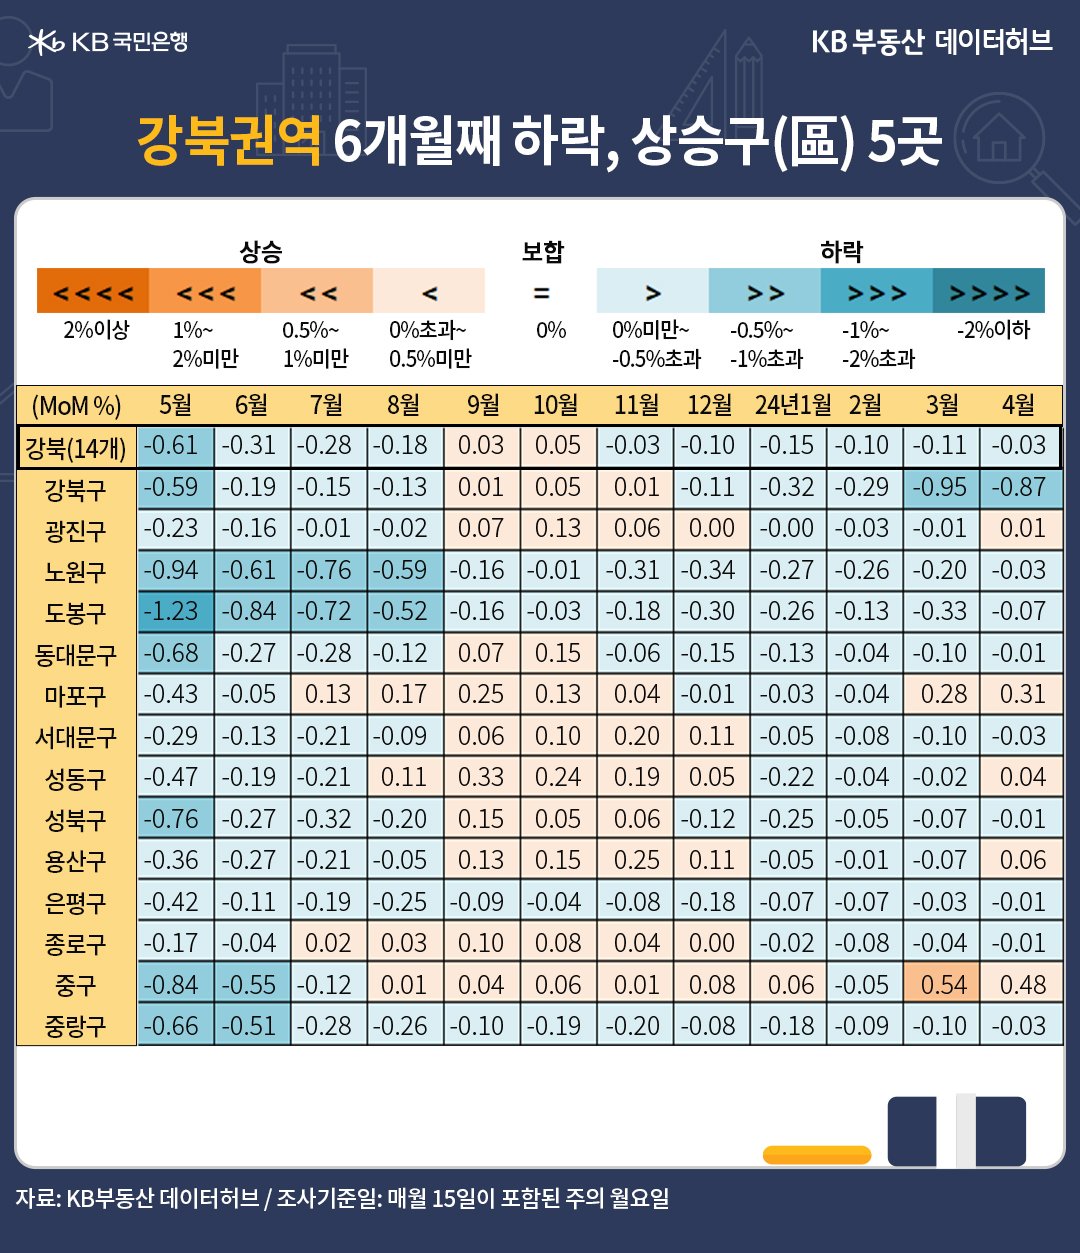 4월 '서울' '매매가격' 전월 대비 증감률은 0.02%로 5개월 만에 상승 전환했습니다. 강남권이 0.06% 상승해 서울 반등을 주도했다는 내용 등이 담긴 표이다.